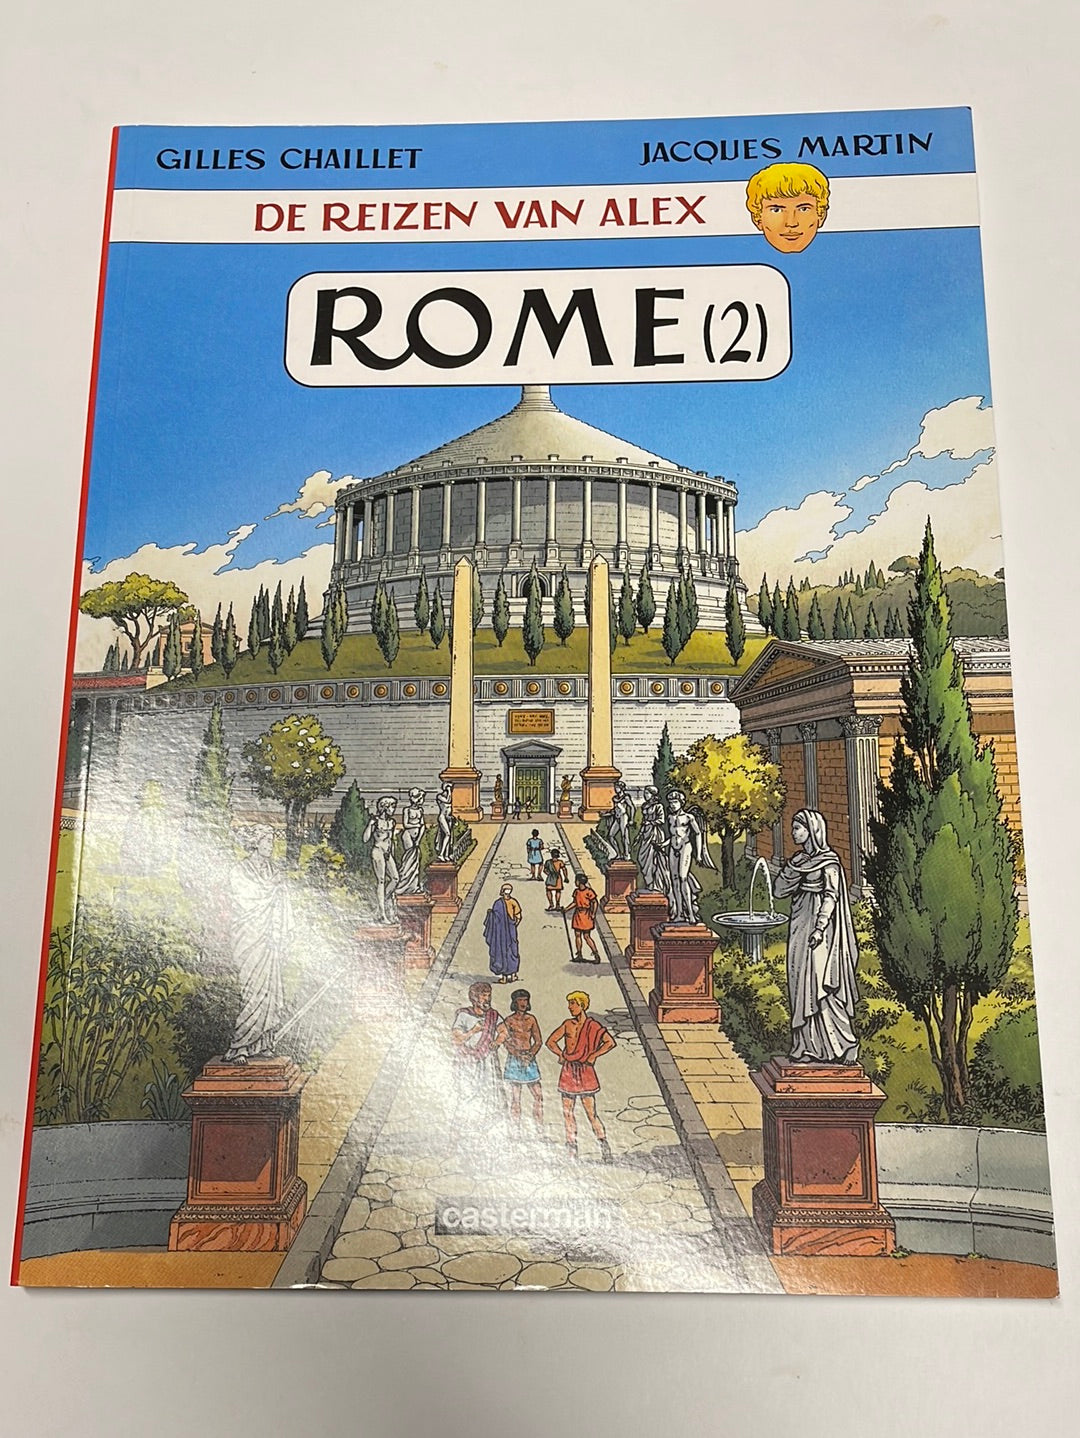 De reizen van Alex- Rome (2), nummer 8